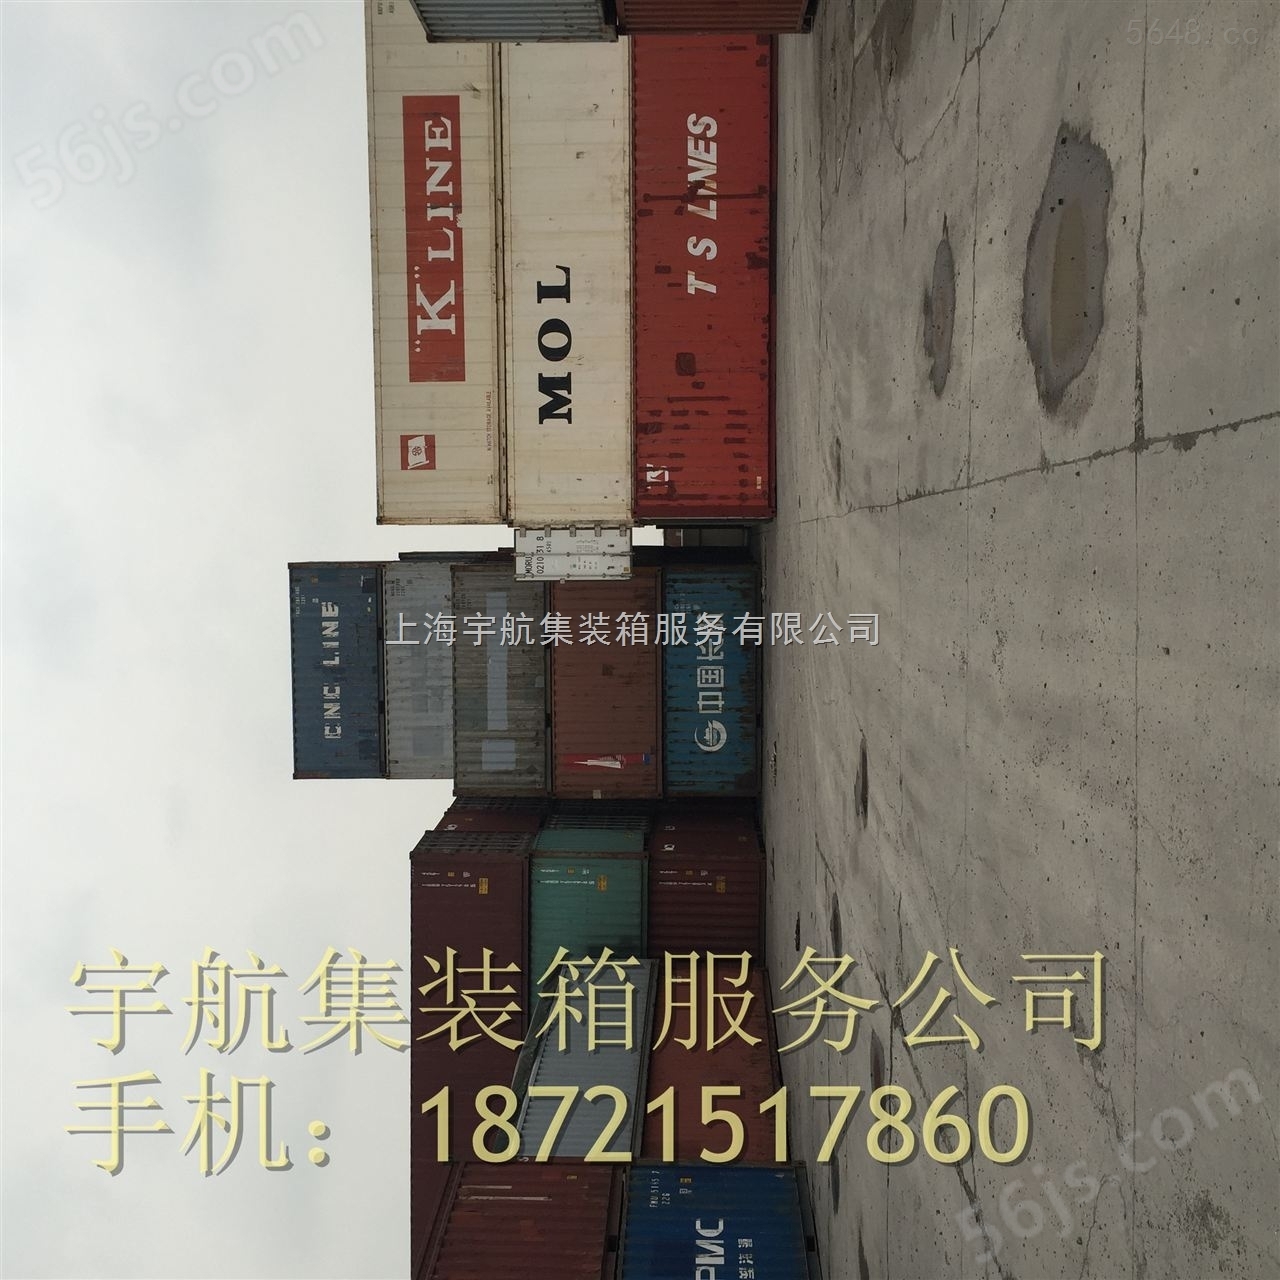 上海江苏浙江二手集装箱买卖。